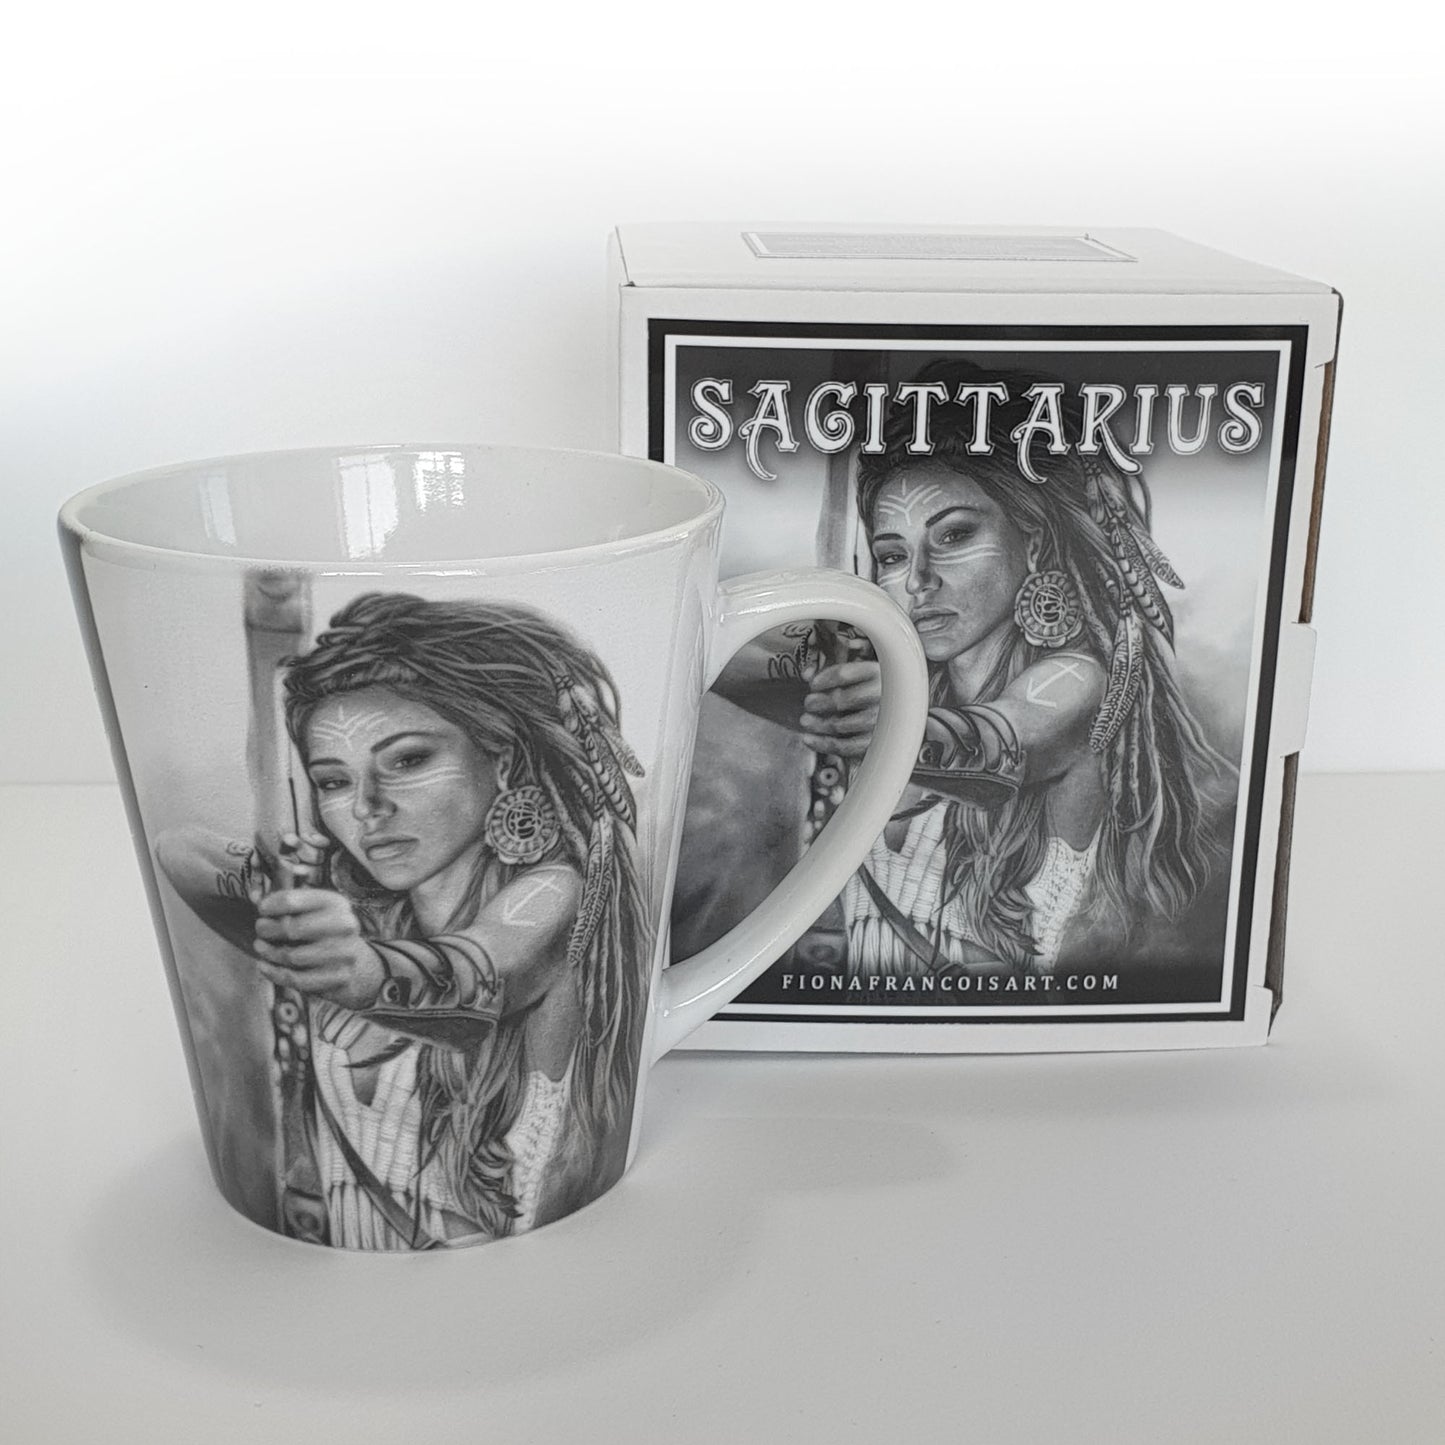 'Sagittarius' ceramic mug